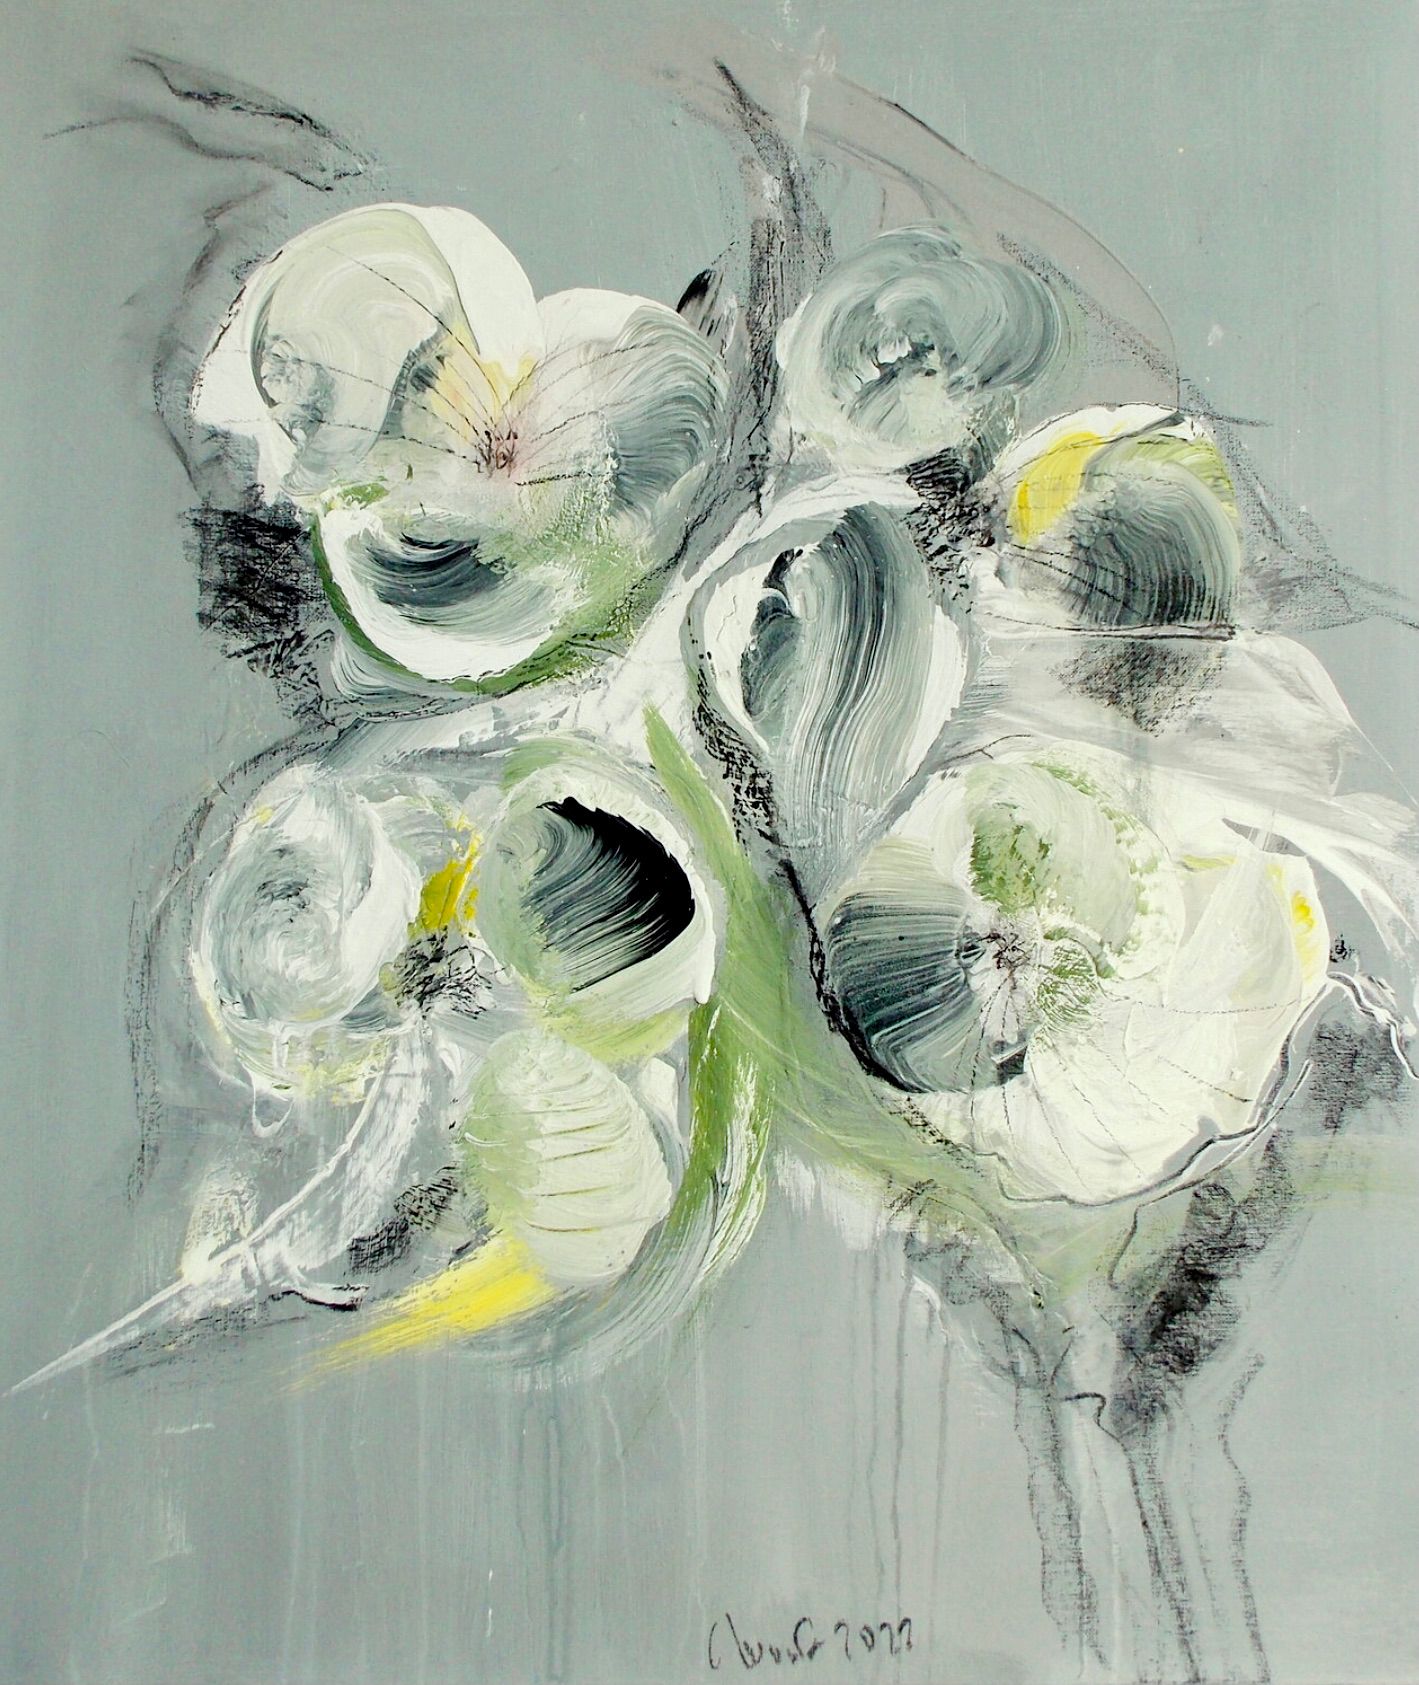 在克里斯塔-哈克的 "Blumenrausch 2 "表现主义抽象花卉画中，米色、绿色和黑色占主导地位。